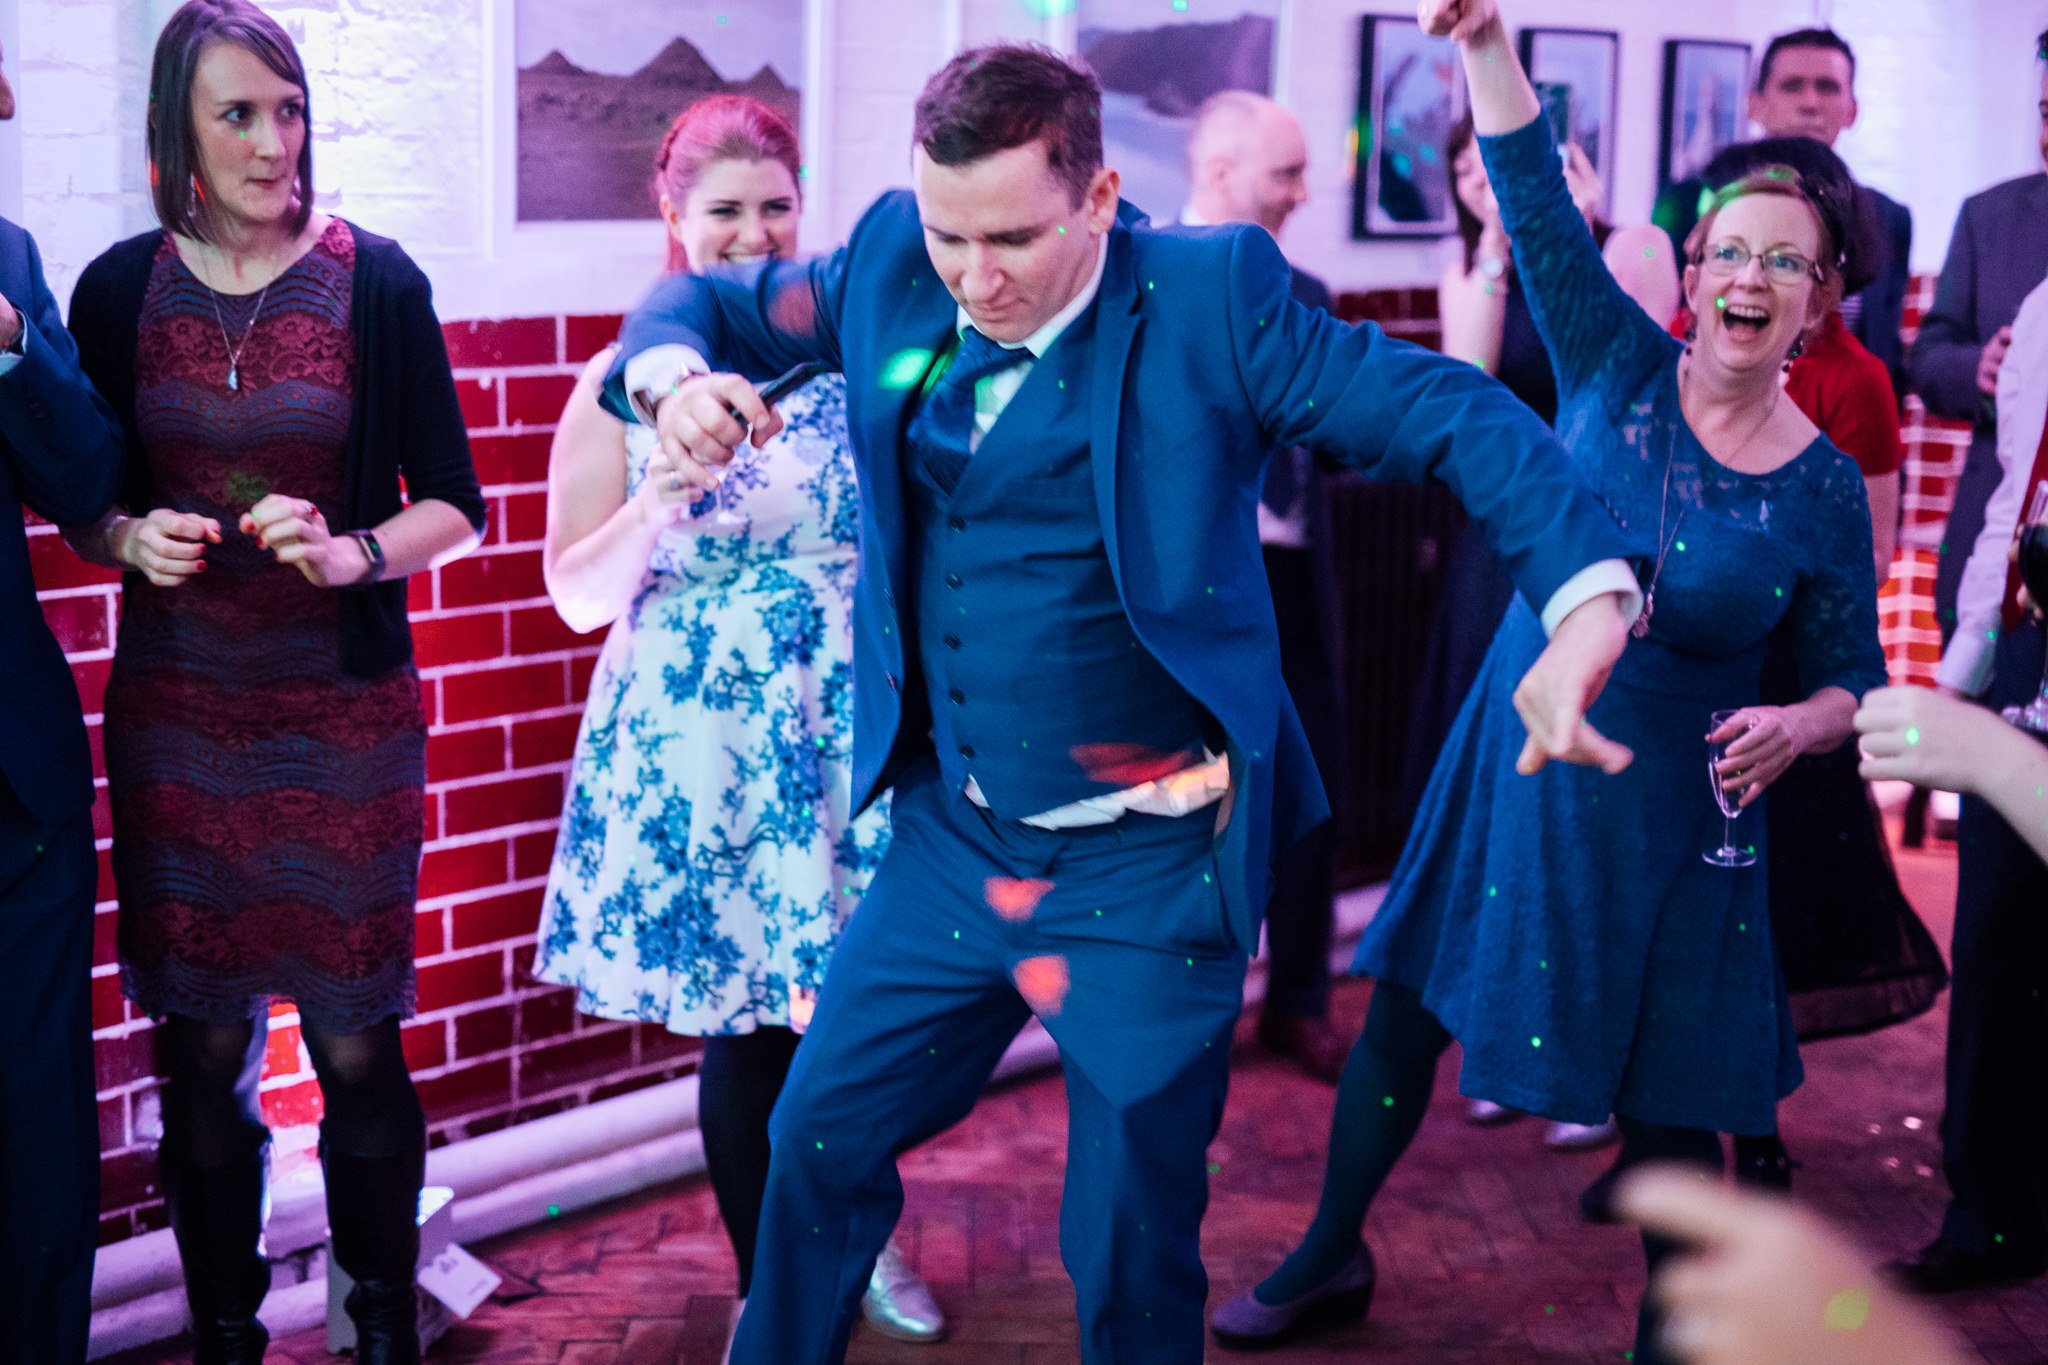  Wedding guests dancing 